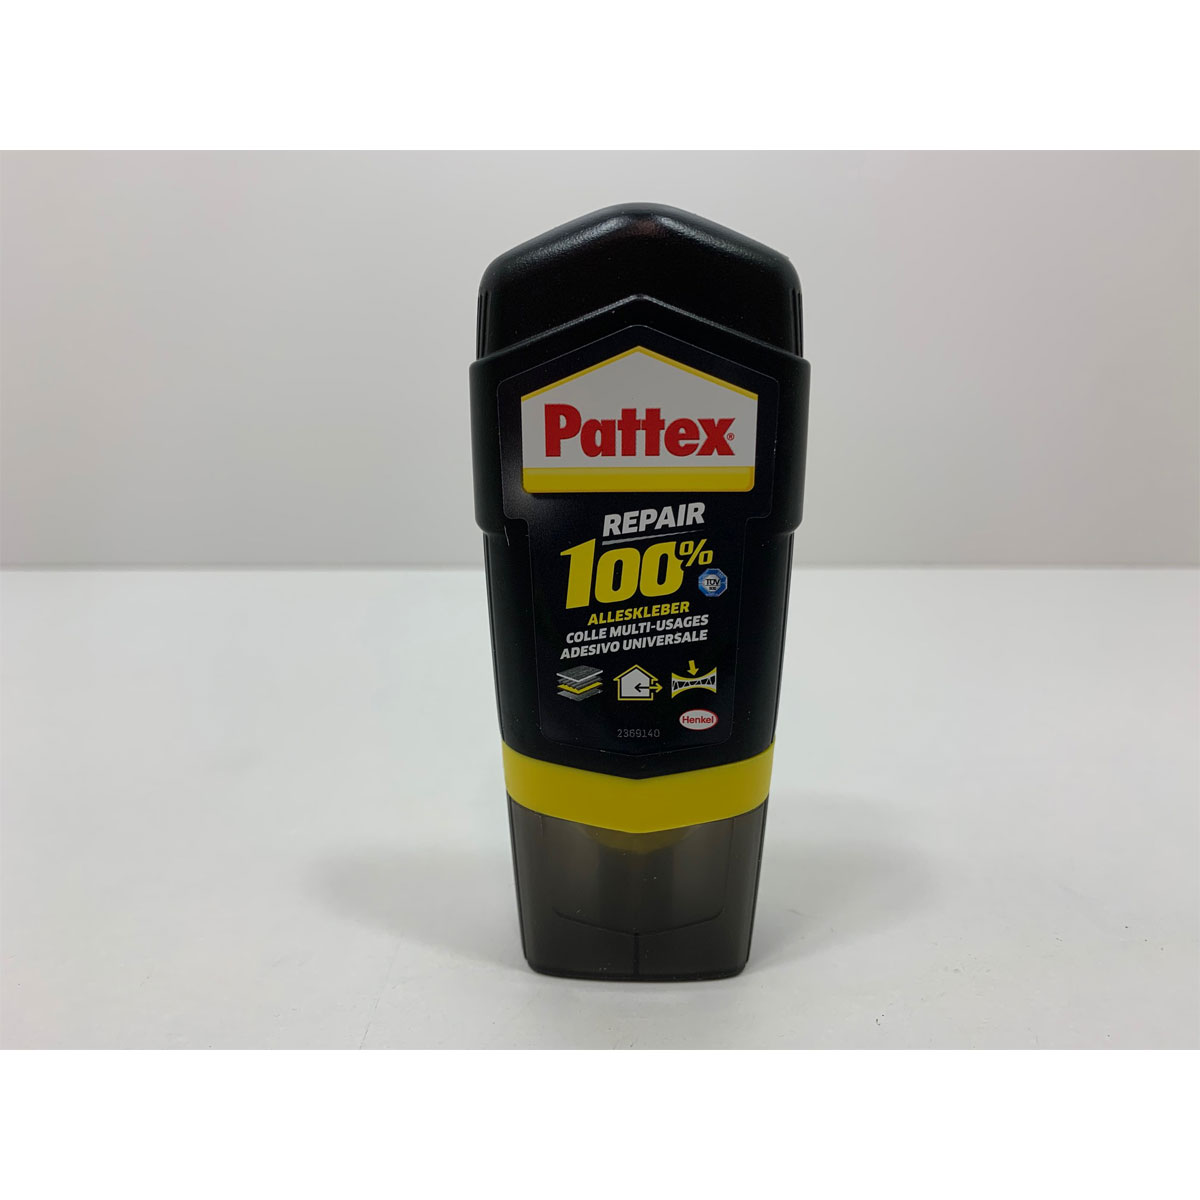 Pattex Alleskleber 100% Repair 50 g